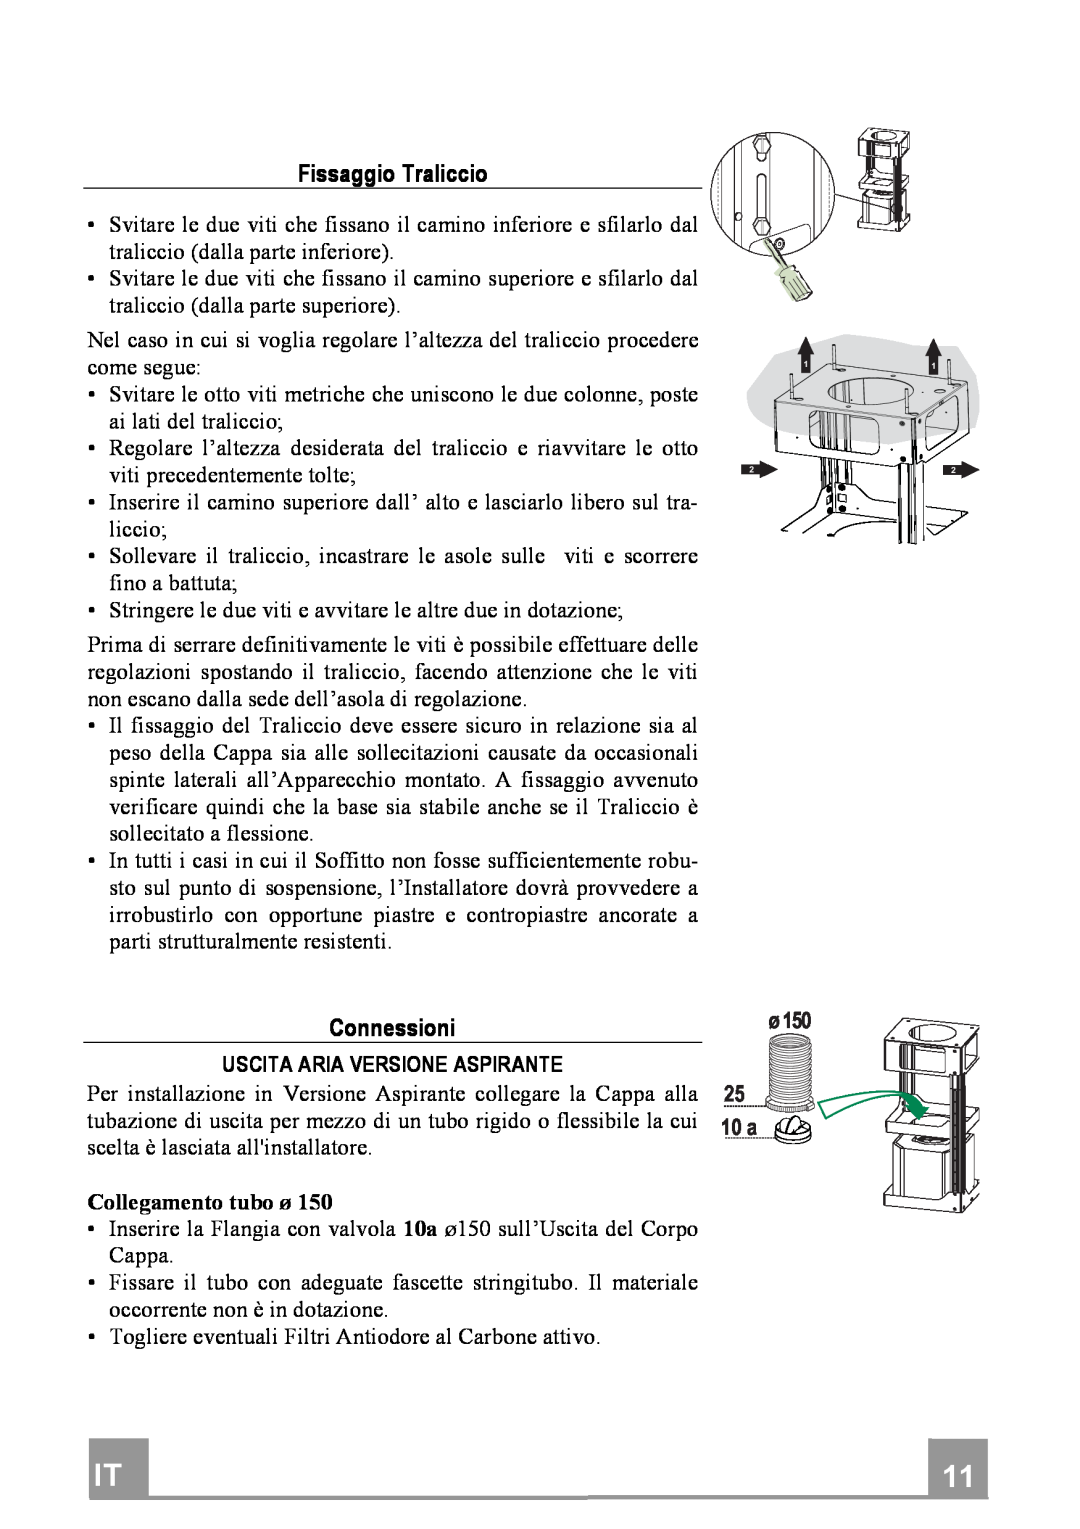 Franke Consumer Products FDF 9044 I manual FissaggioTraliccio, Connessioni, 10 a 